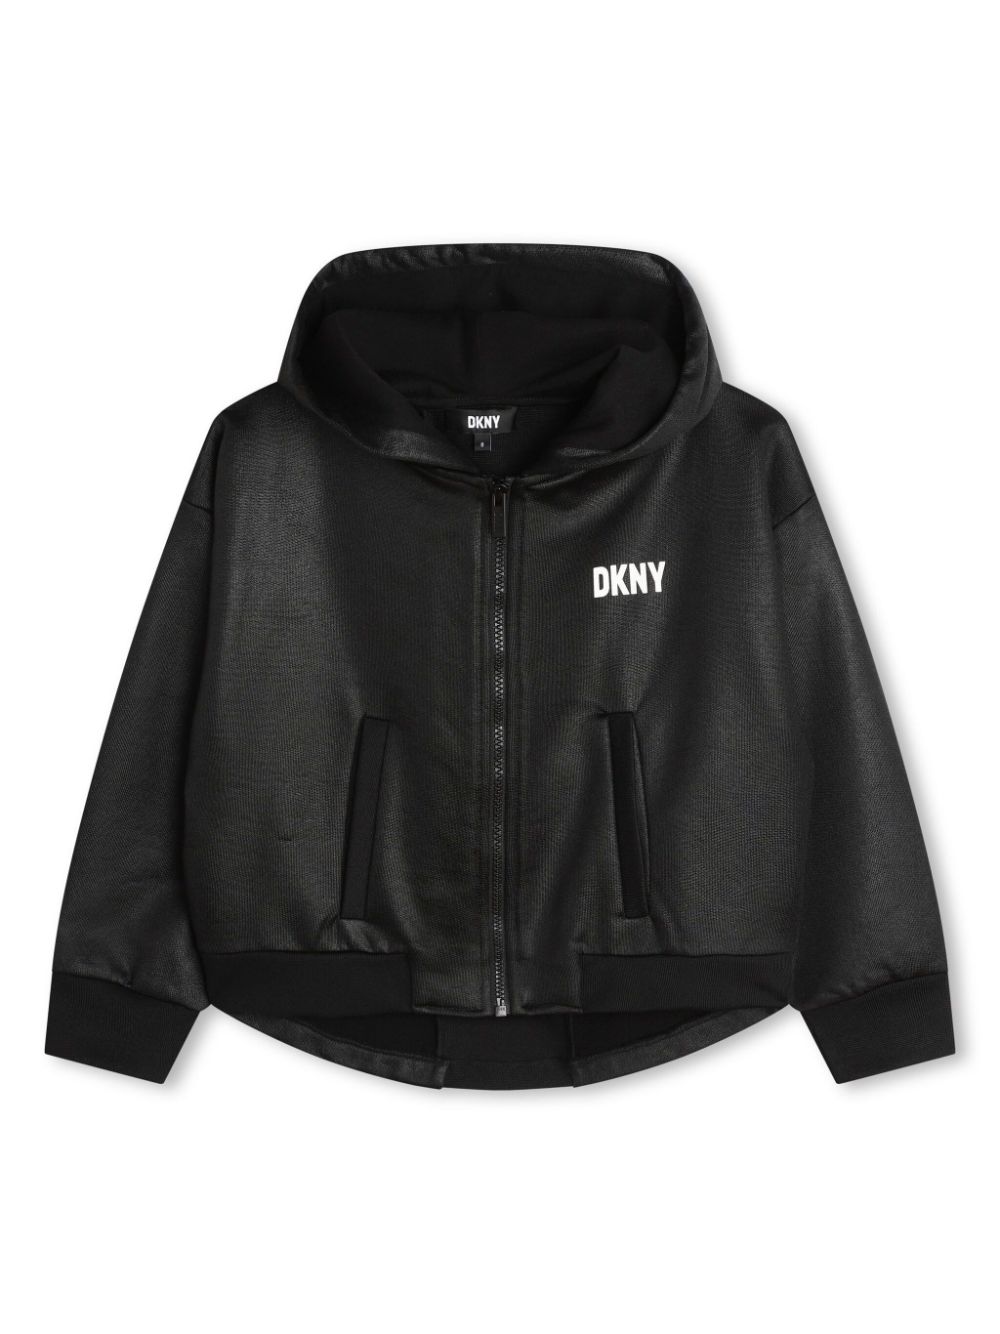 Dkny Kids logo-appliqué hooded jacket - Black